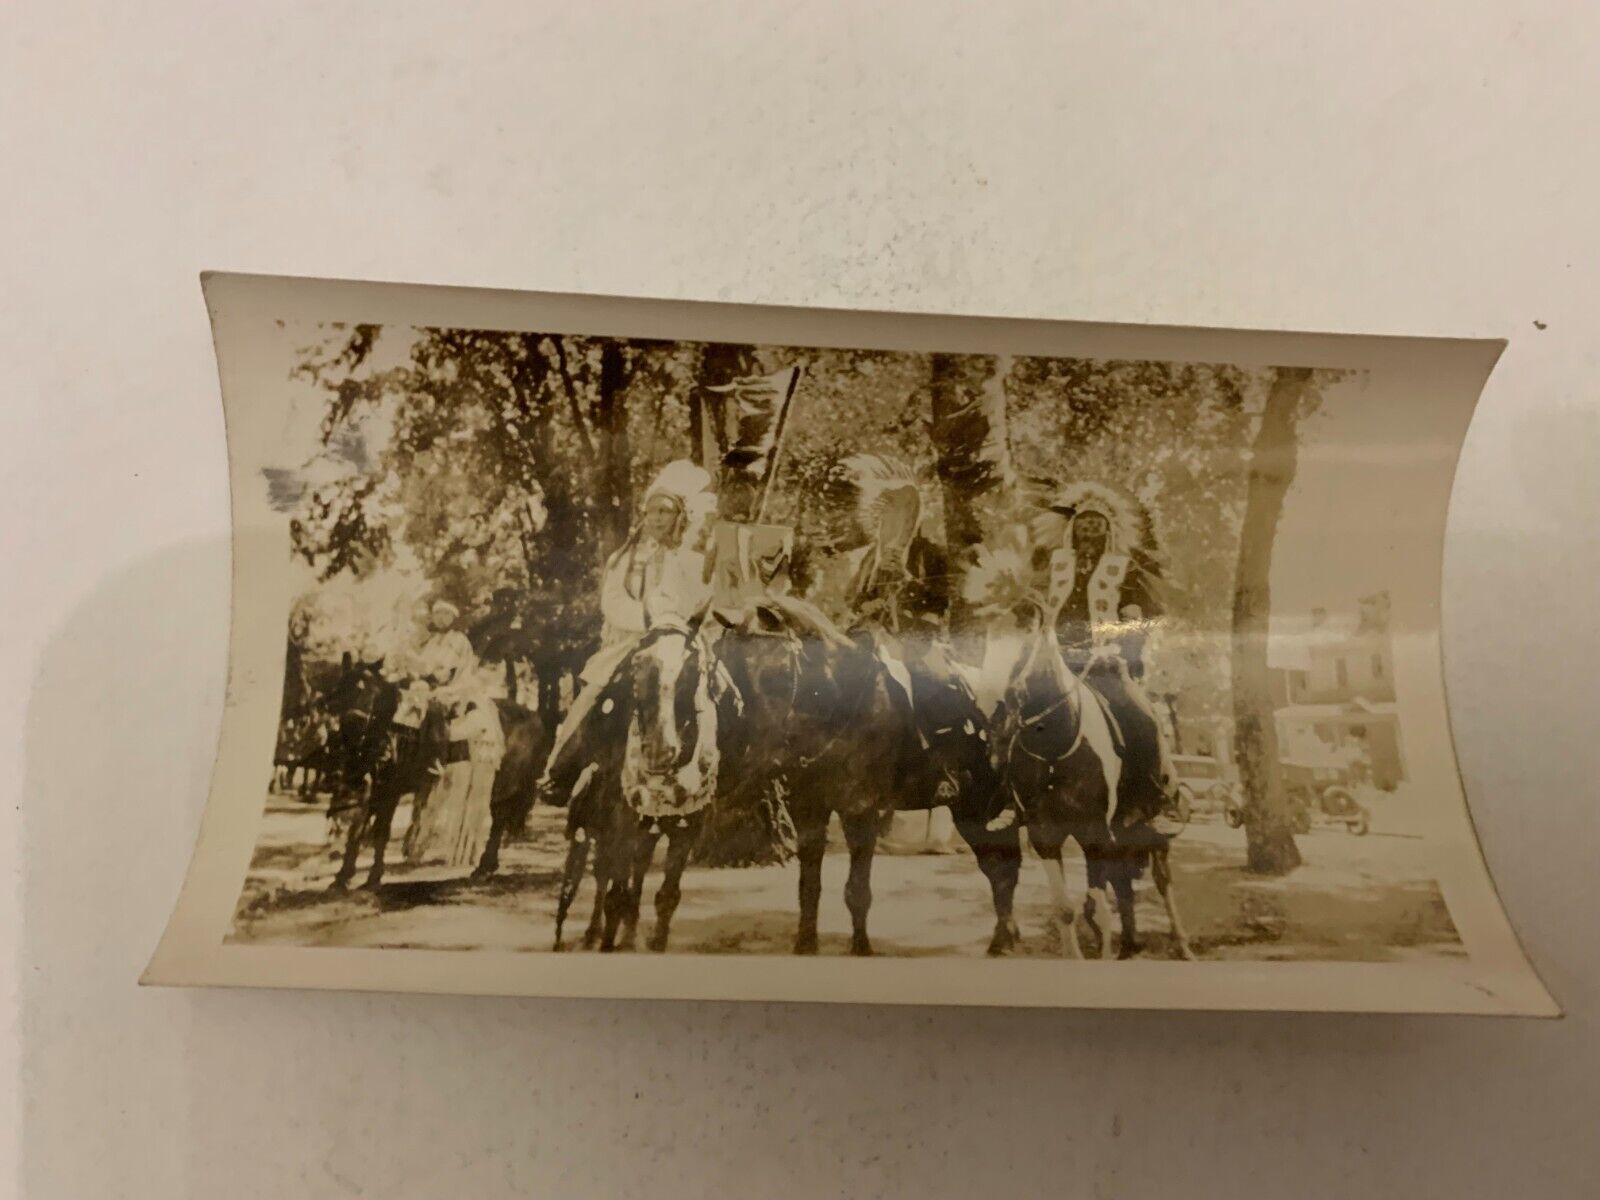 c.1940's Yakima Indian Chiefs on Horseback Washington Black and White Photograph